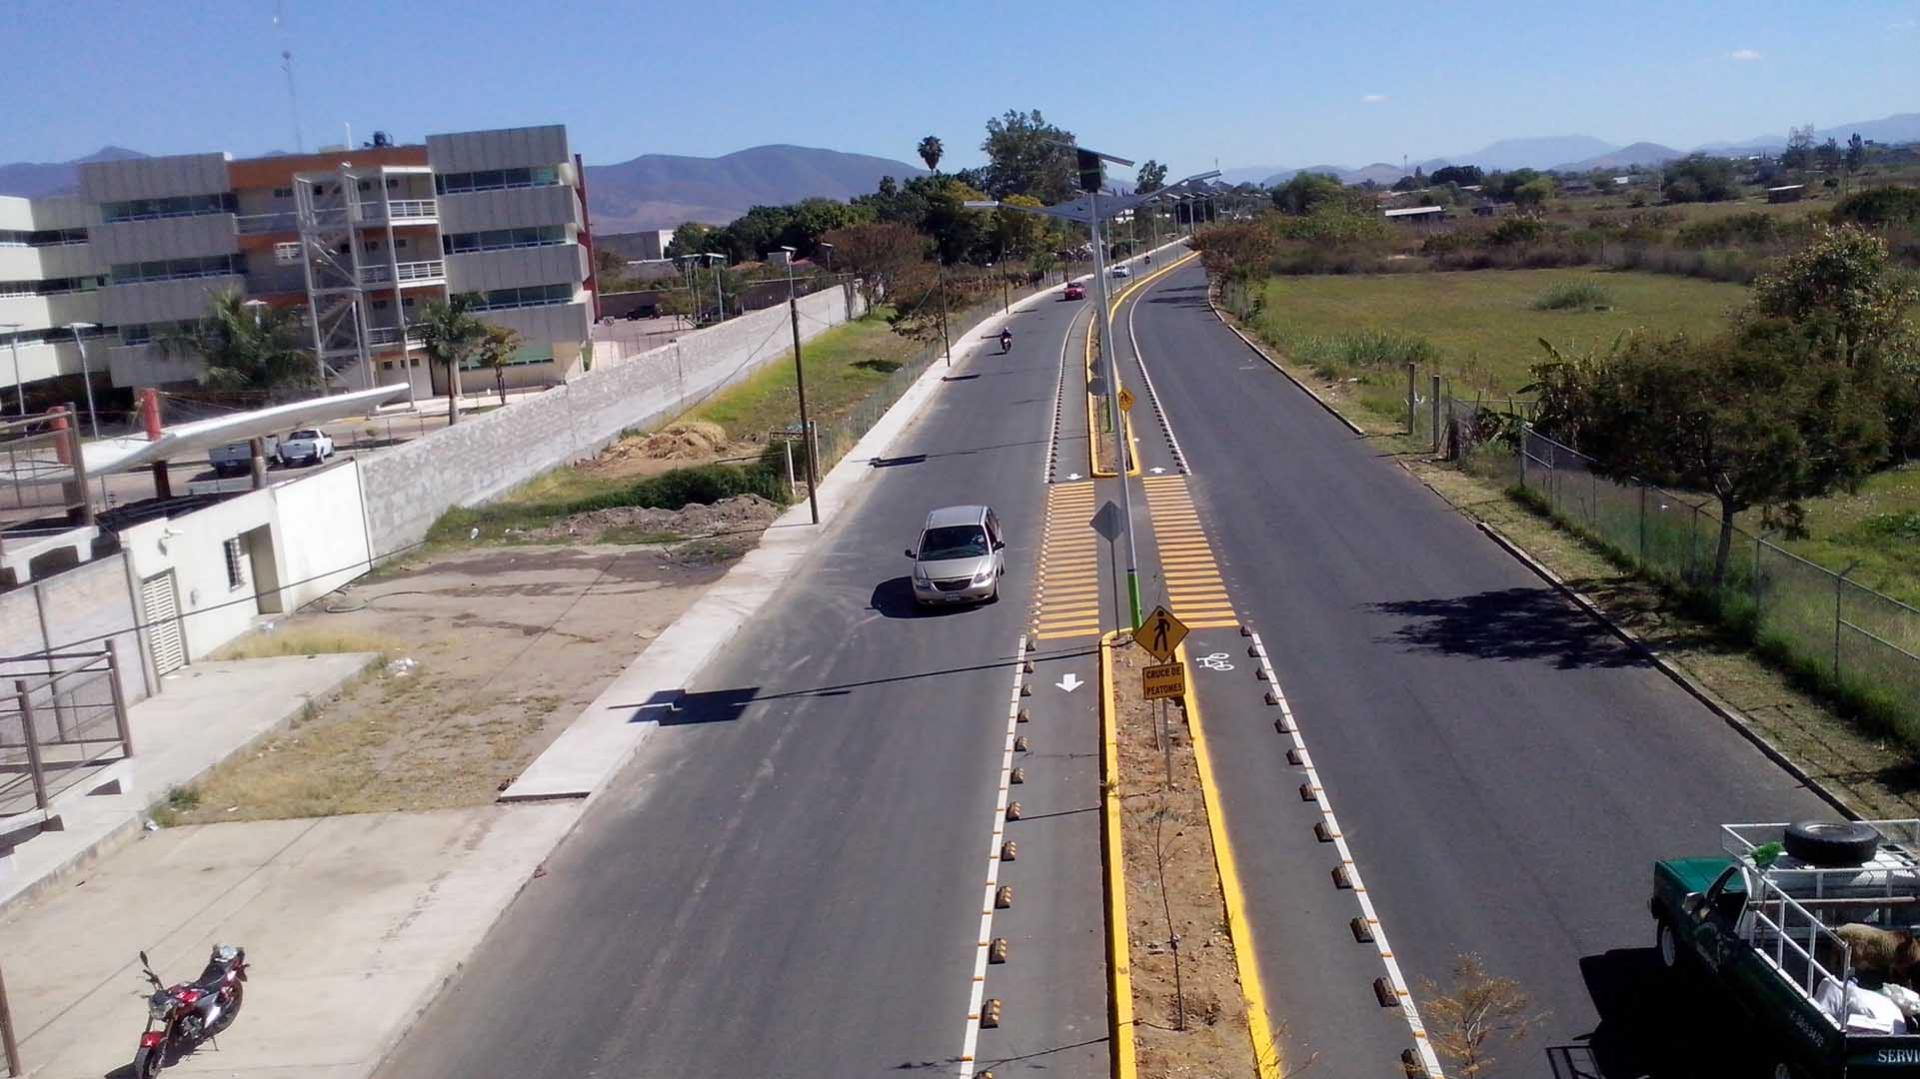 Oaxaca con ciclovias costosas sin ciclistas y carente de servicios básicos